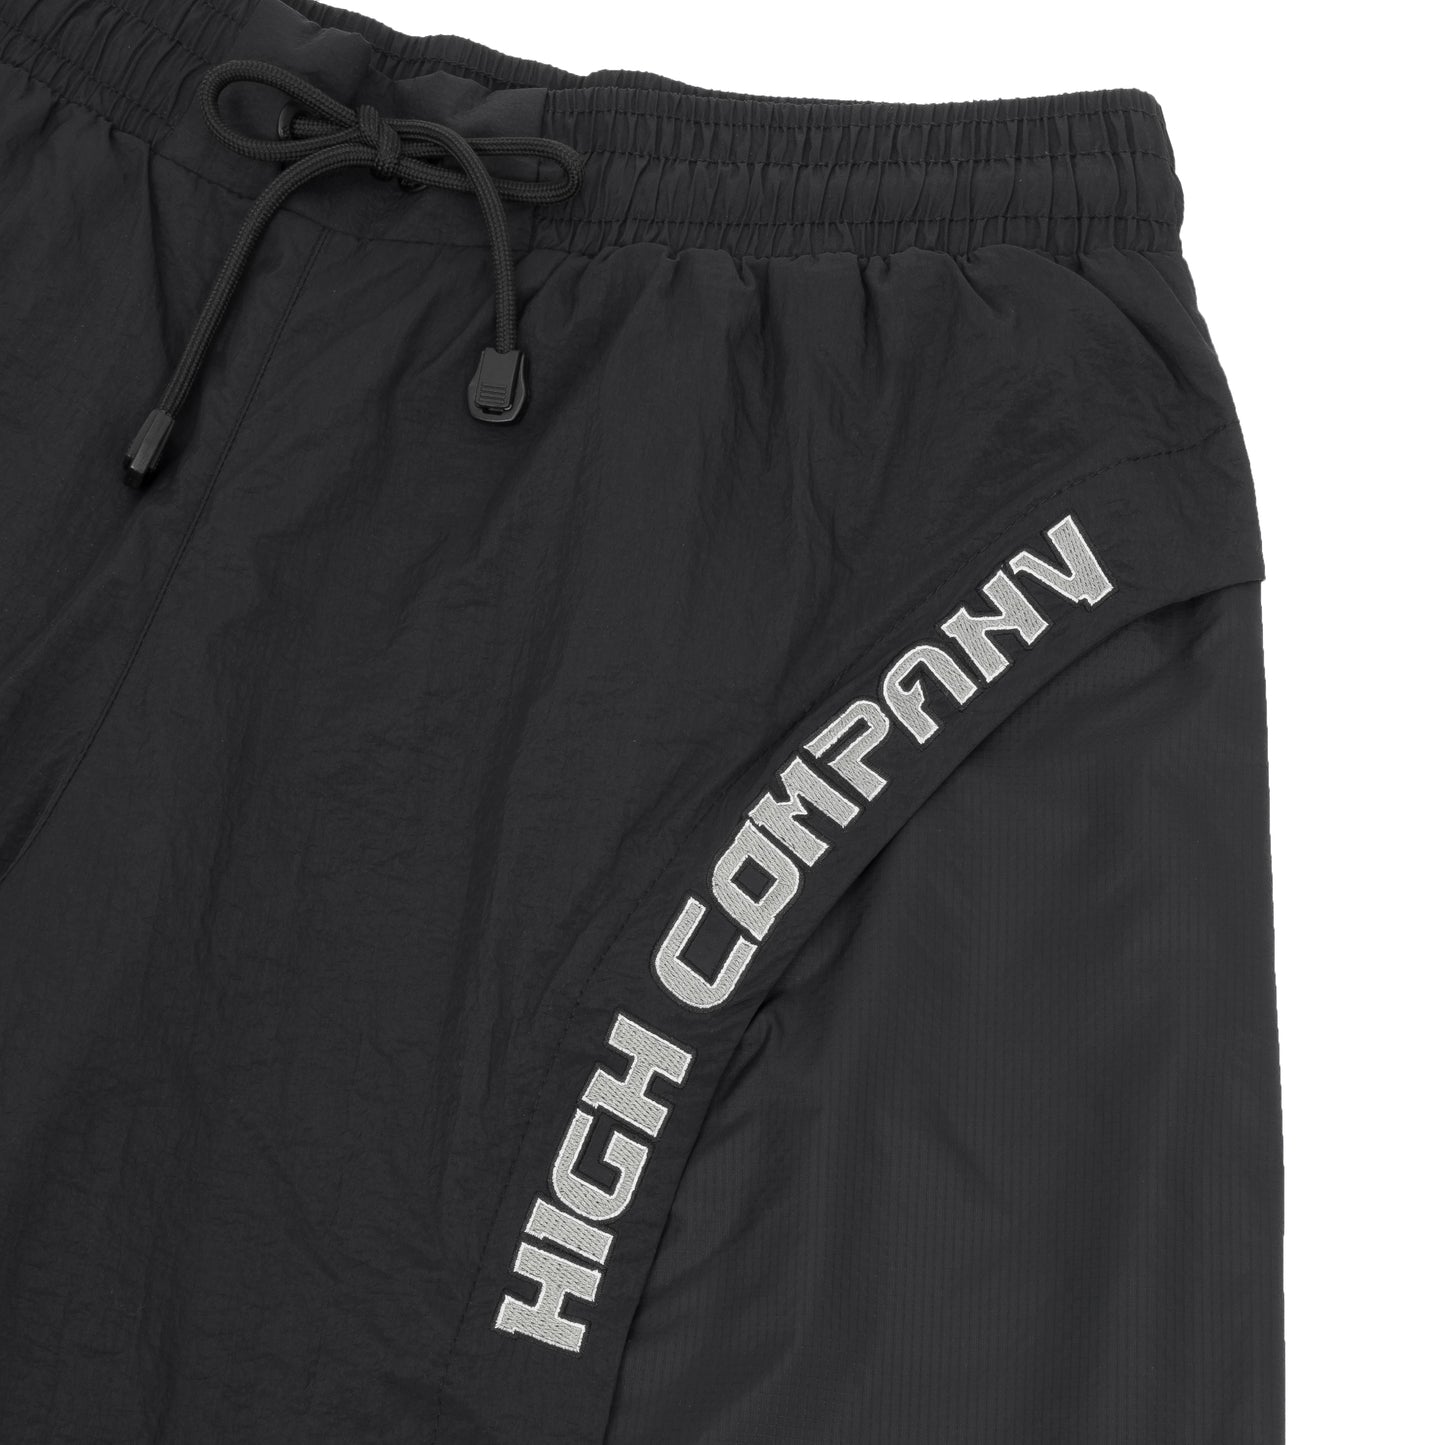 HIGH - Shorts Aerodynamic Black